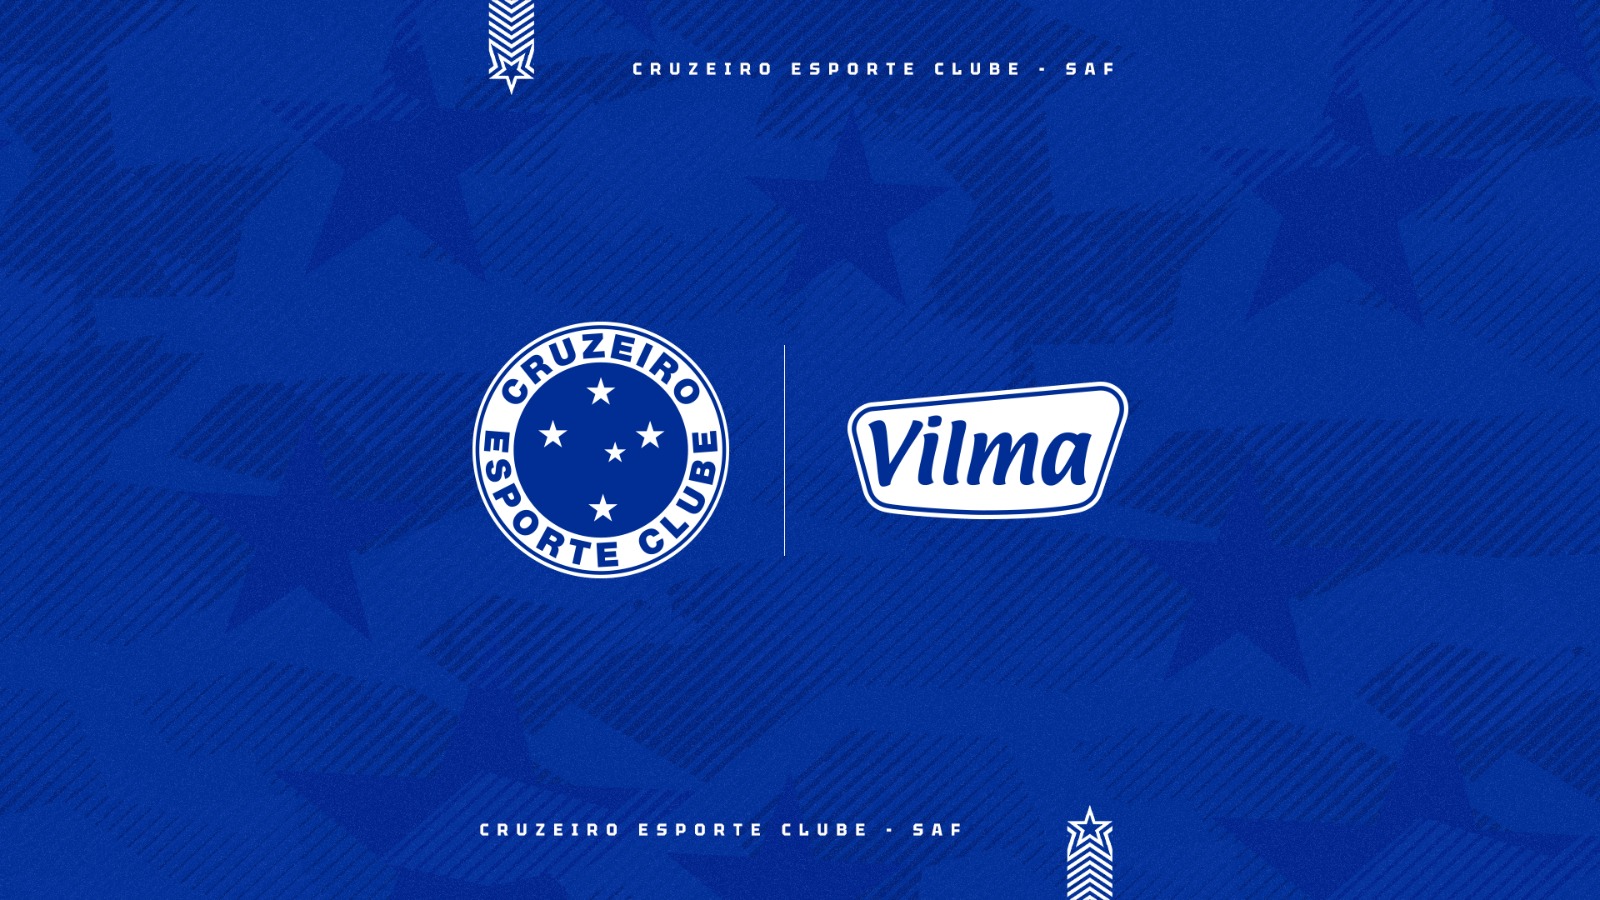 Parceira de longa data, Vilma Alimentos volta a ser patrocinadora do Cruzeiro